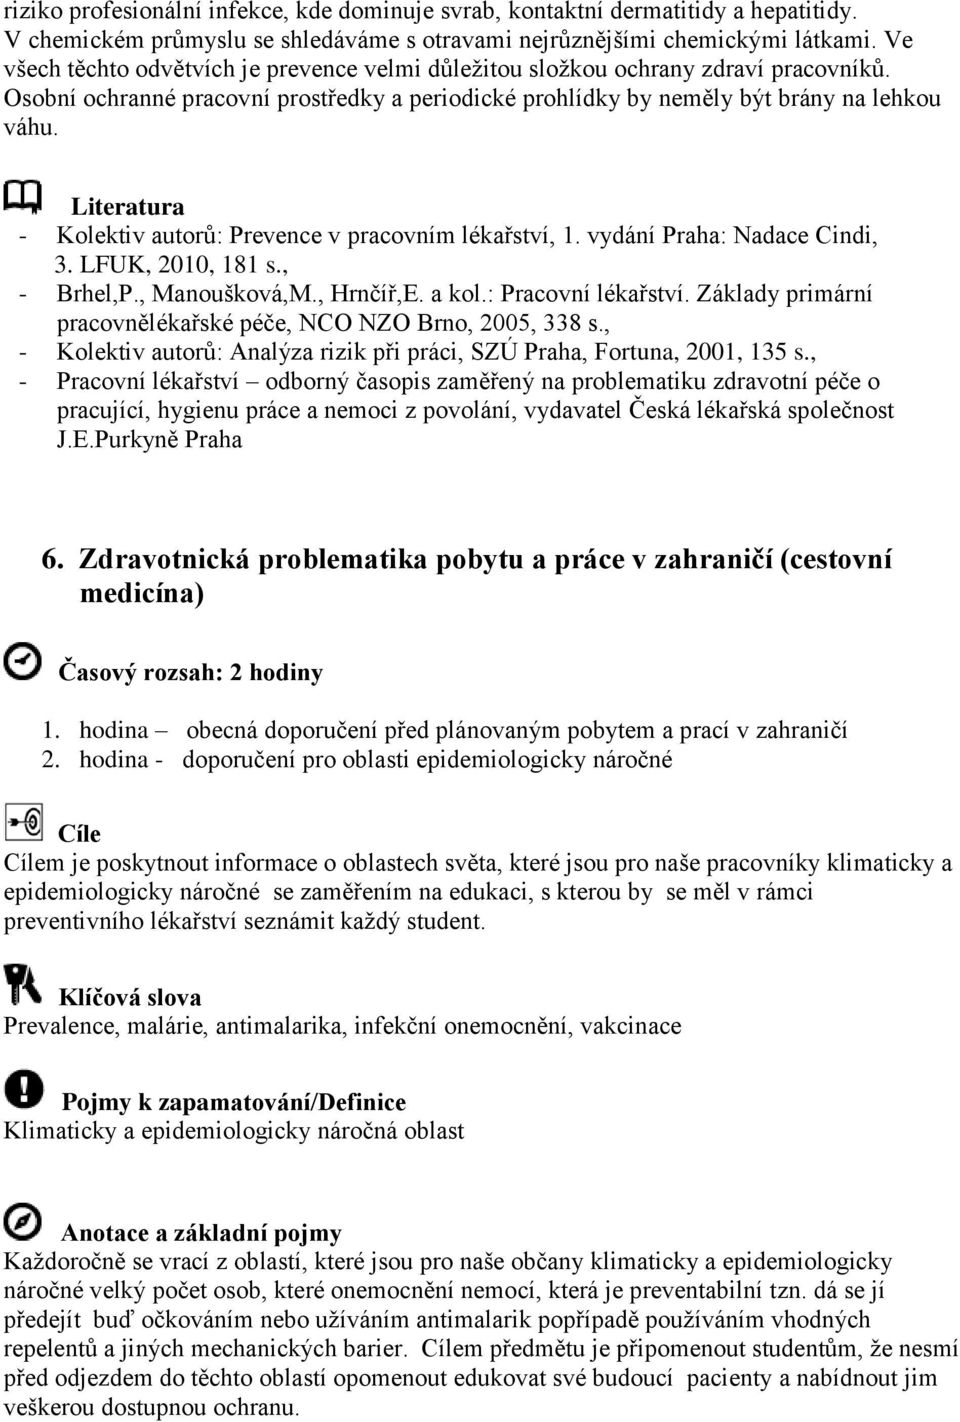 Literatura - Kolektiv autorů: Prevence v pracovním lékařství, 1. vydání Praha: Nadace Cindi, 3. LFUK, 2010, 181 s., - Brhel,P., Manoušková,M., Hrnčíř,E. a kol.: Pracovní lékařství.